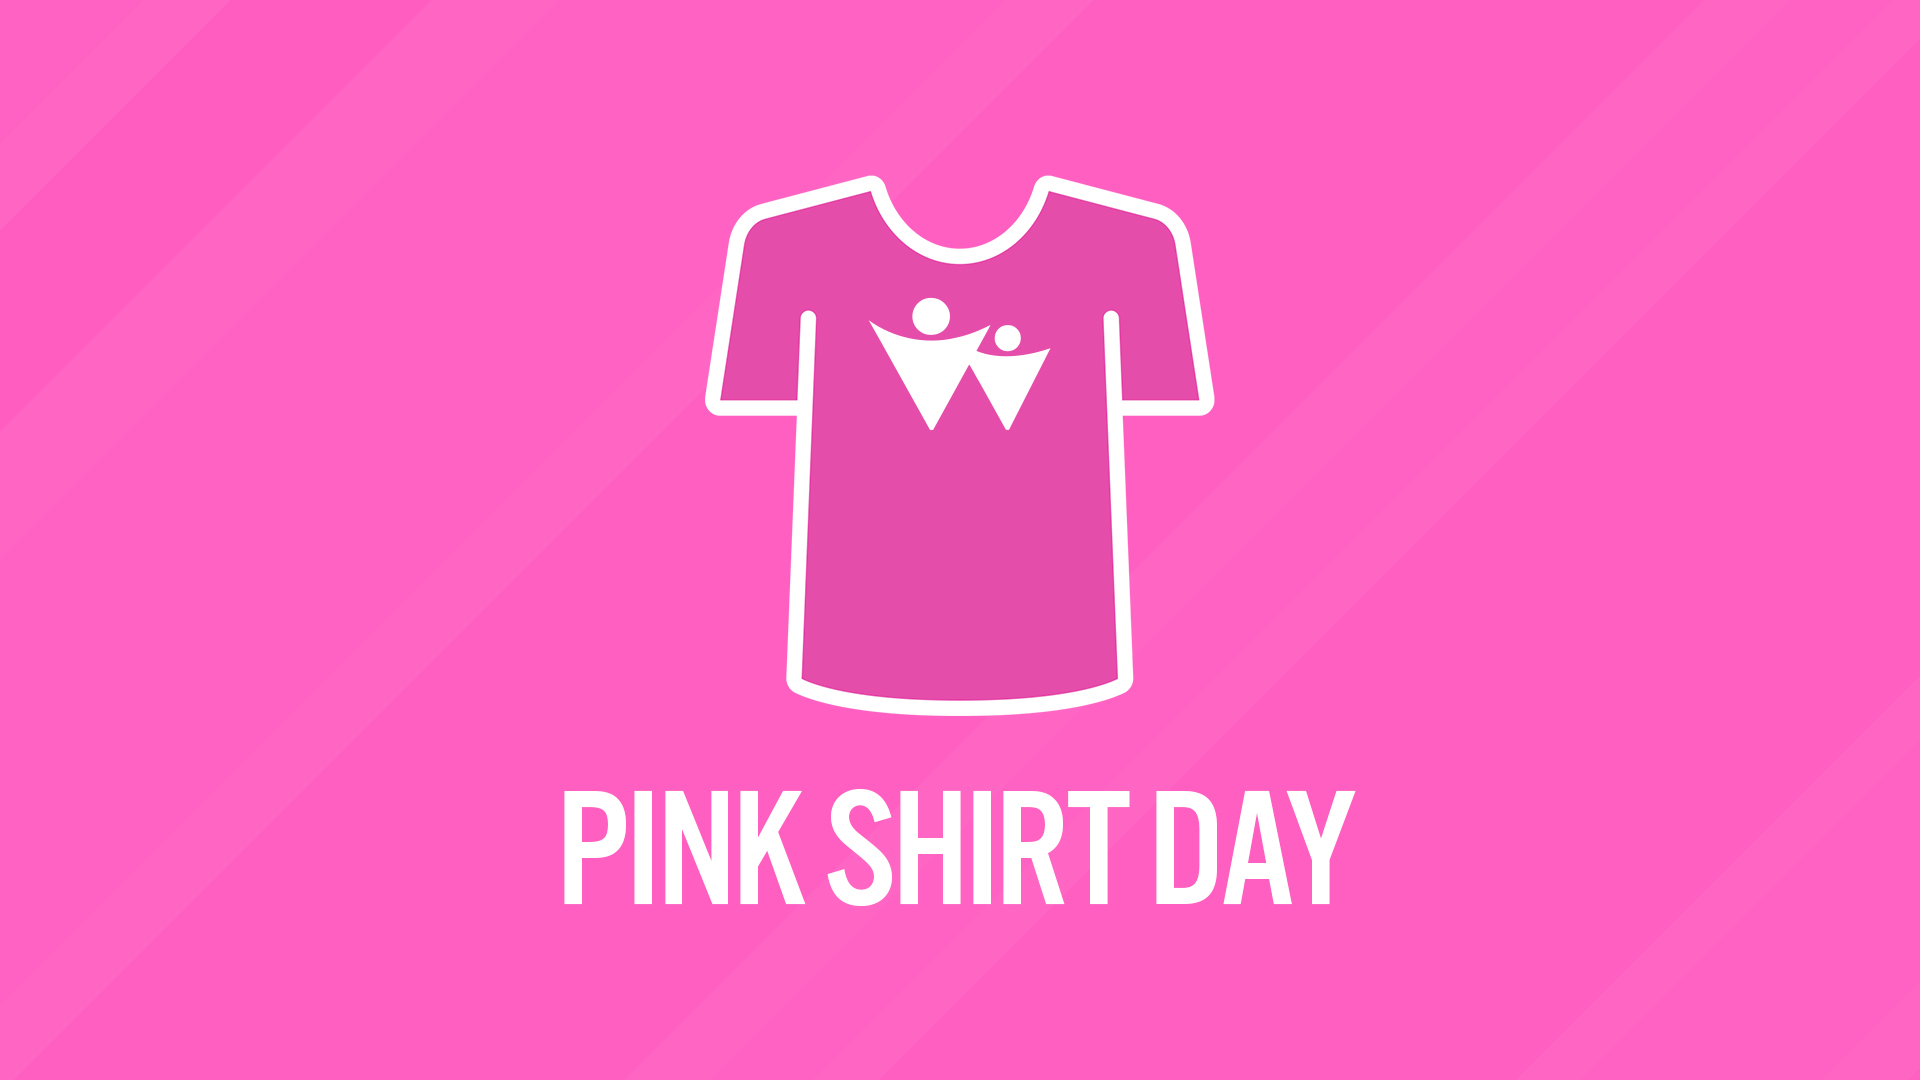 Hãy hỗ trợ Pink Shirt Day cùng chúng tôi để lan tỏa thể hiện sự quan tâm và chia sẻ tới những người cần giúp đỡ. Mỗi hành động nhỏ của bạn đều góp phần vào sự nâng cao ý thức cộng đồng về tình người và sự chấp nhận đa dạng. Hãy cùng chúng tôi hỗ trợ để chung tay xây dựng một cộng đồng văn minh và hạnh phúc.